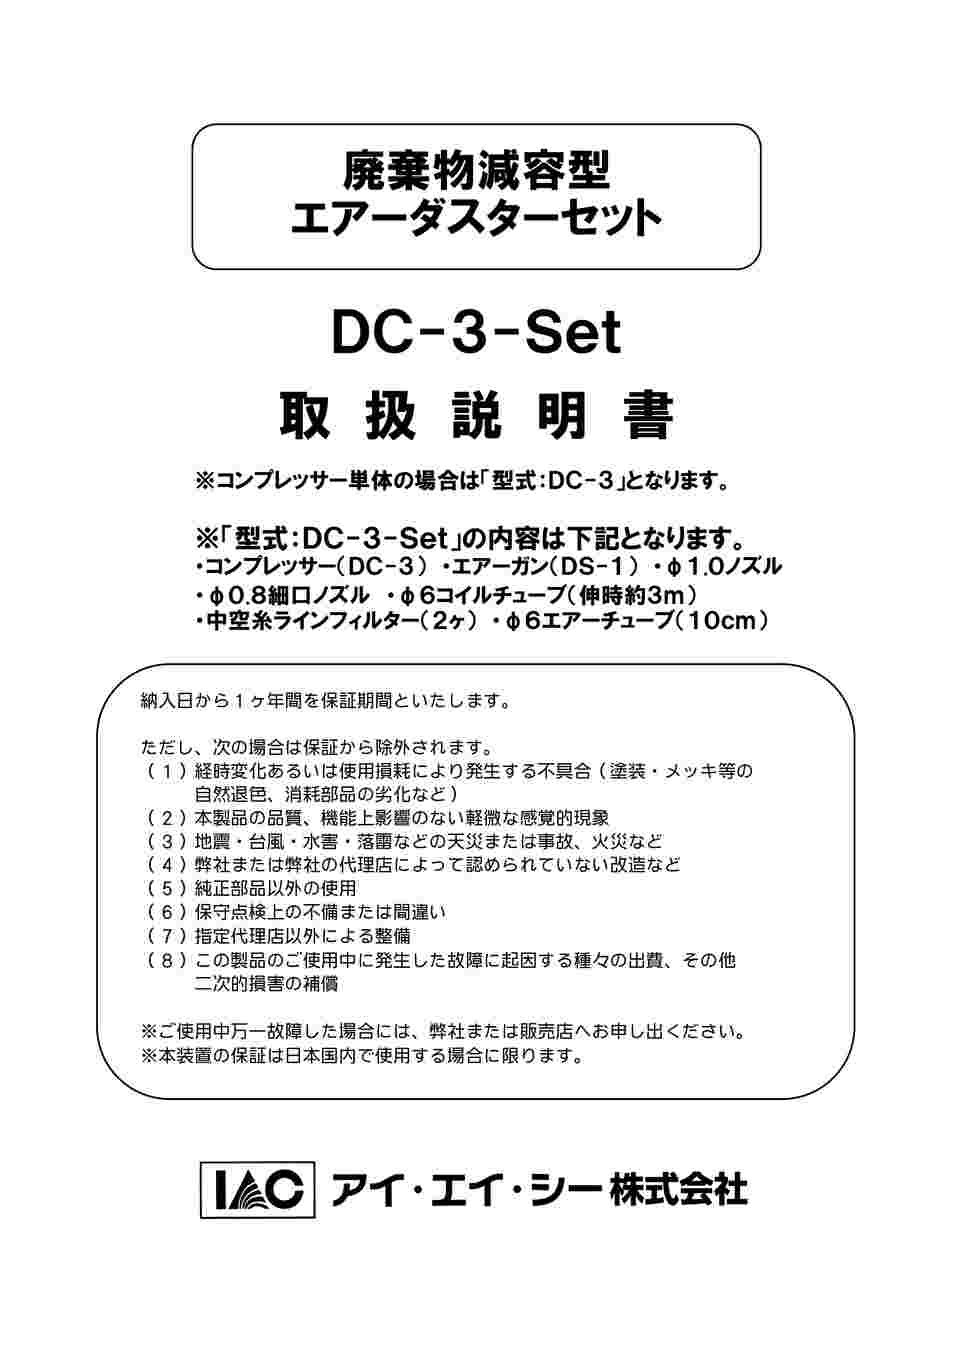 62-0955-56 エアーダスターコンプレッサー DC-3-Set